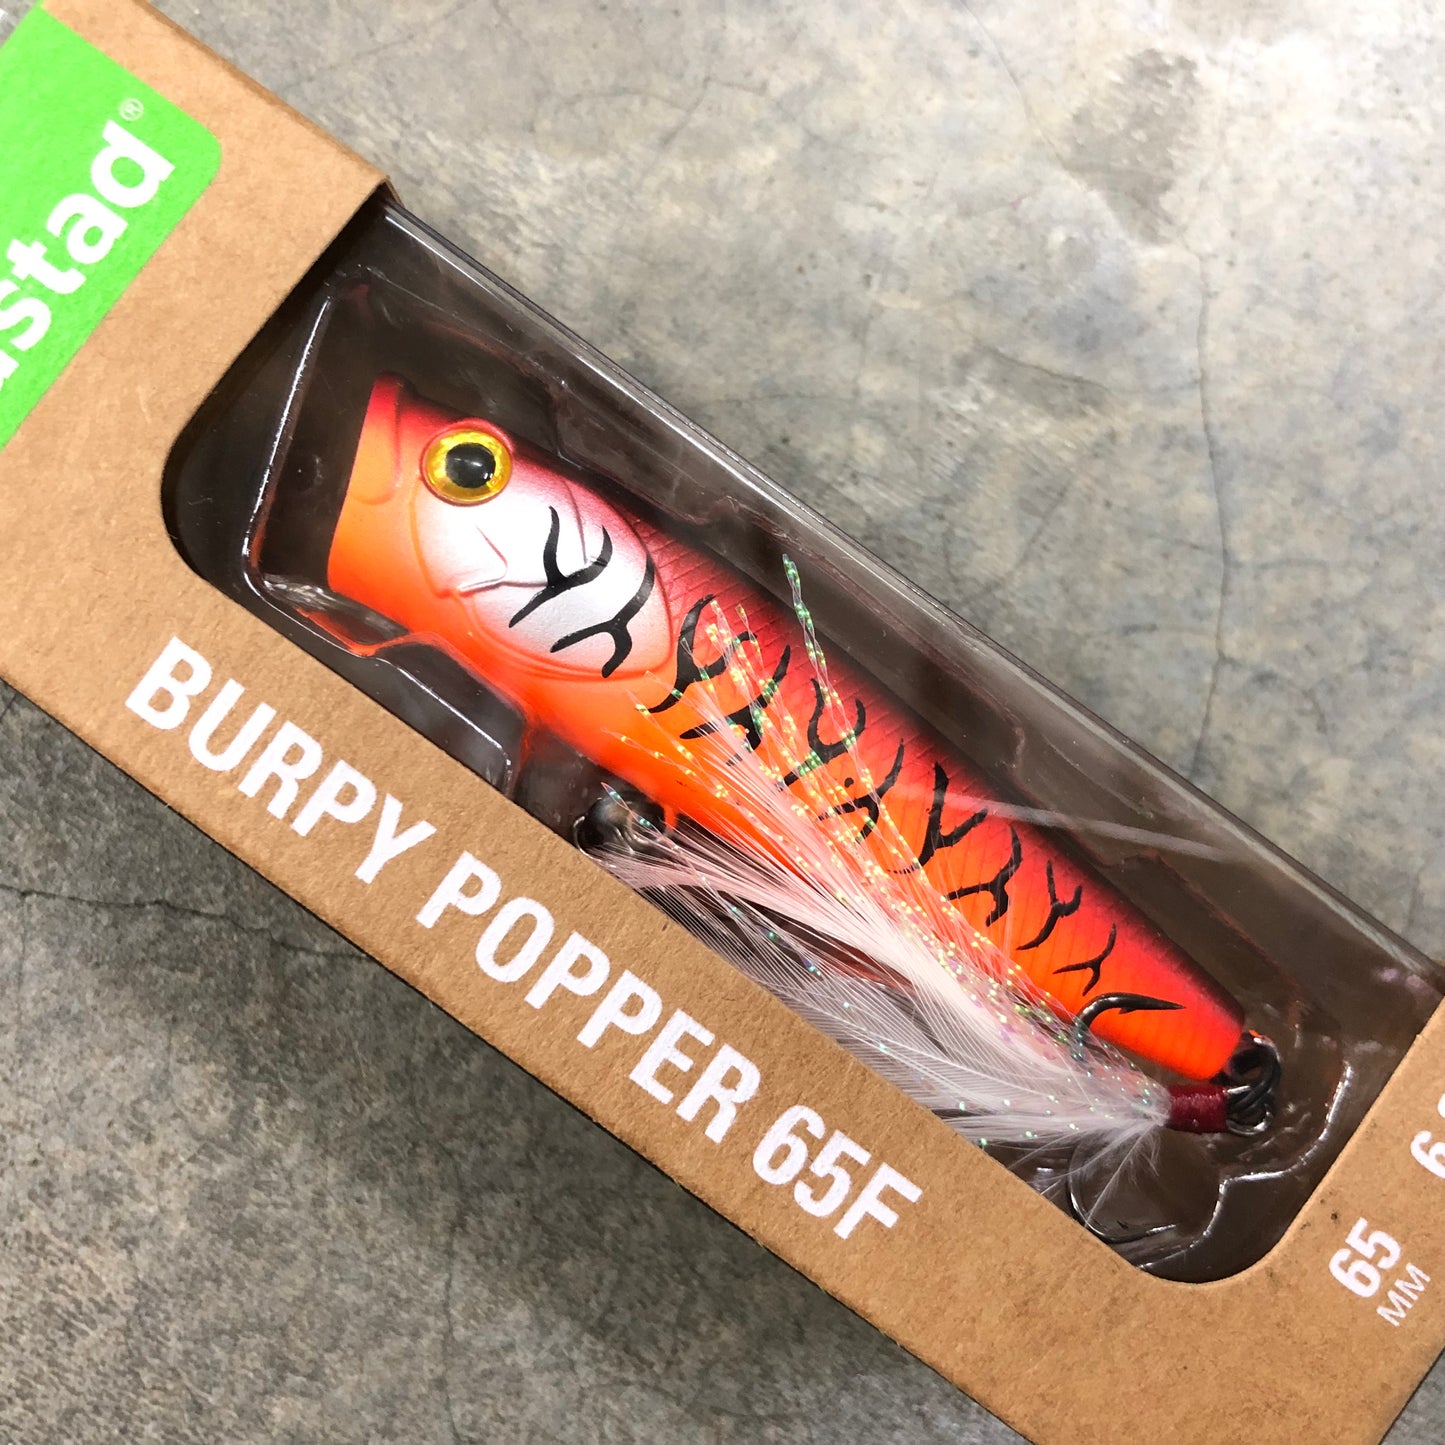 Burpy Popper 65F